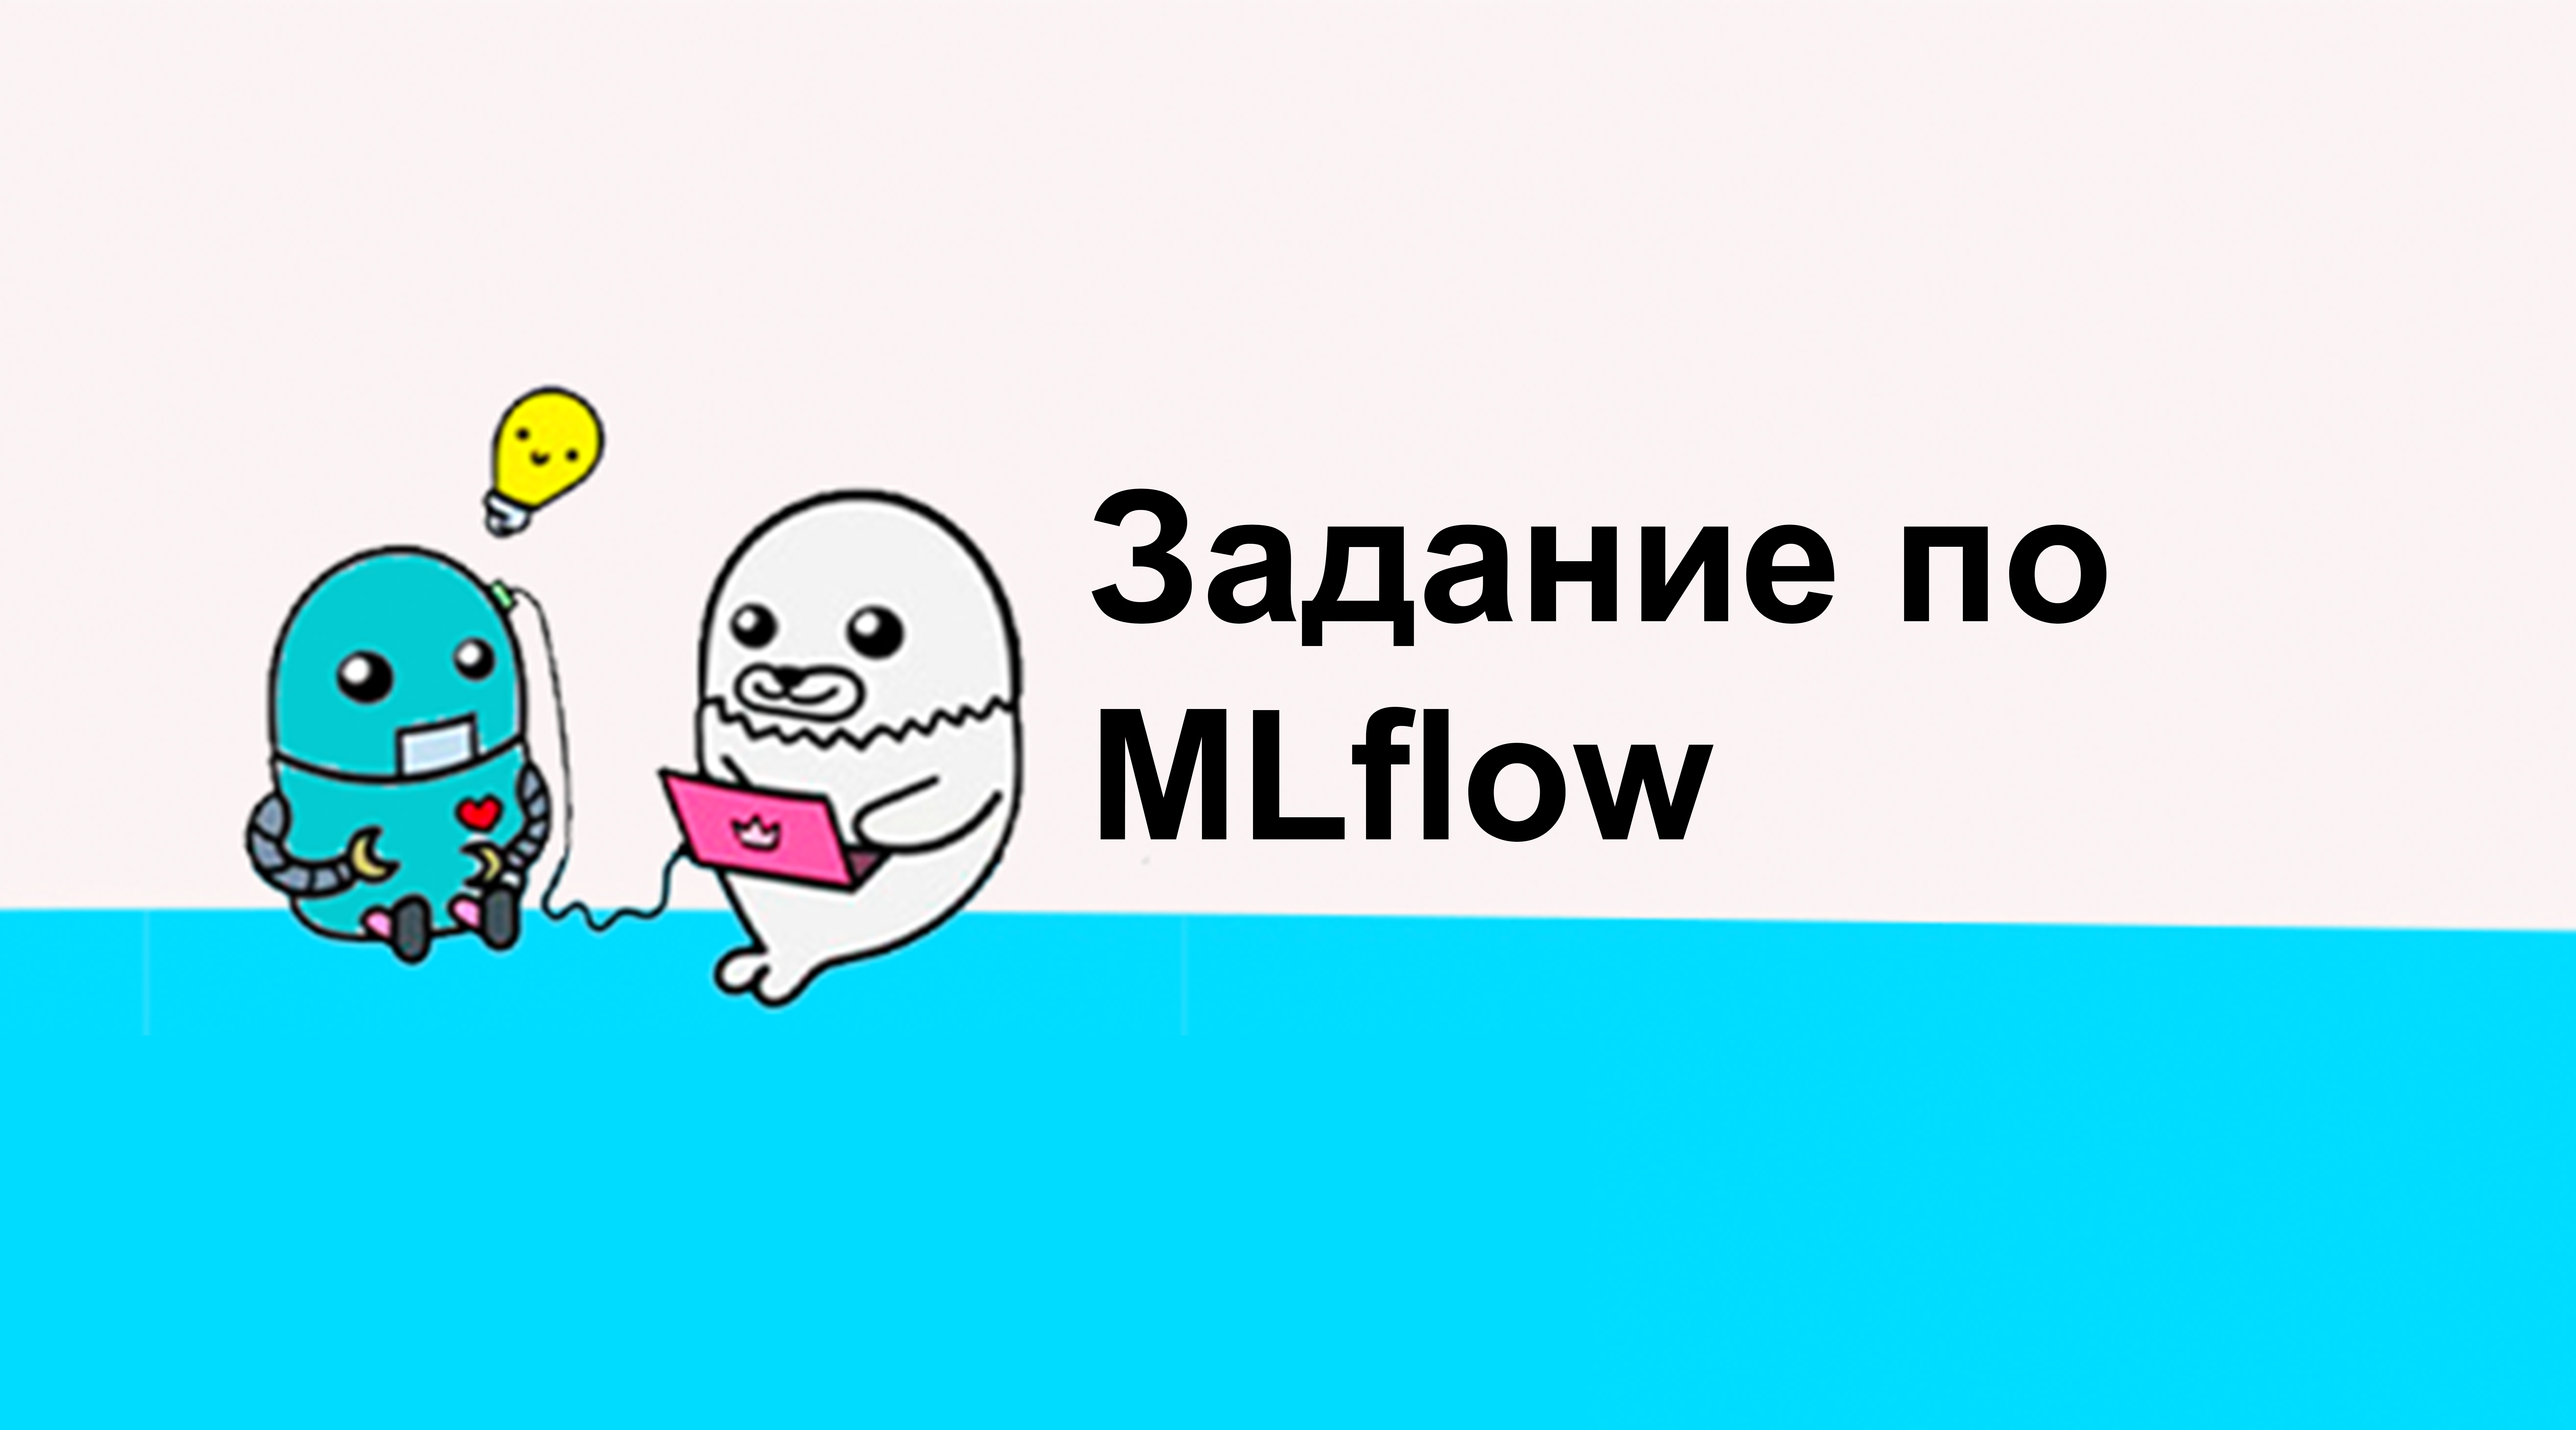 Задание по блоку MLflow